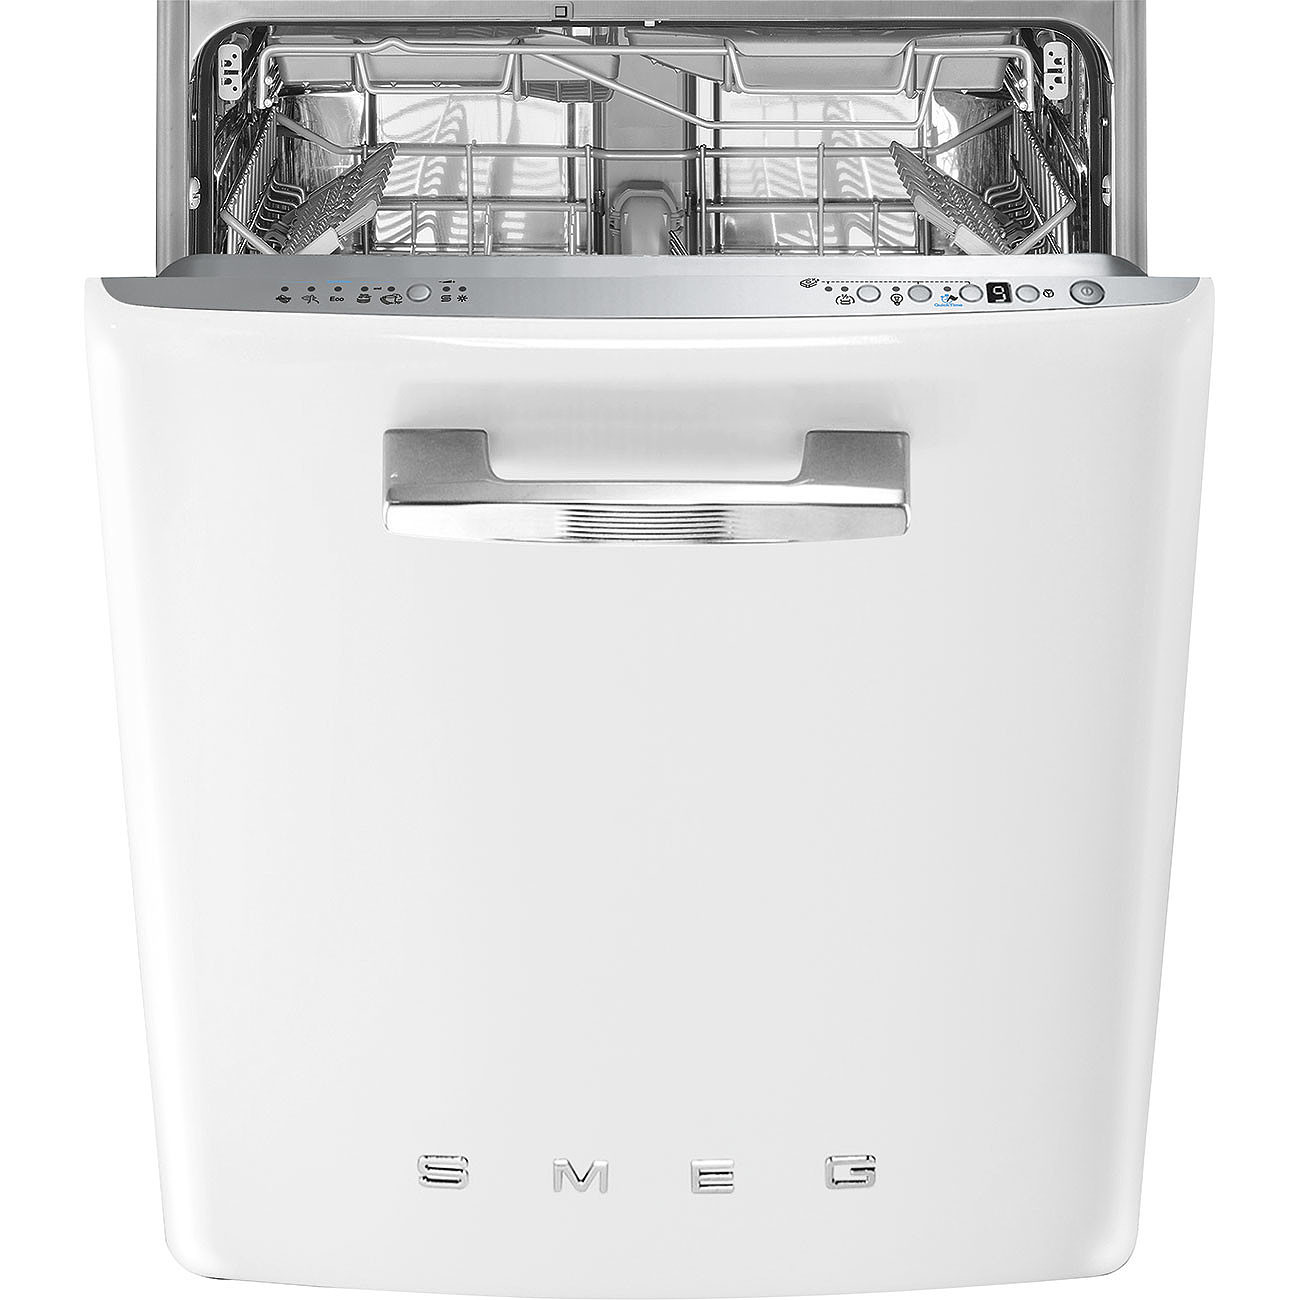 Пмм горенье. Посудомоечная машина Smeg st2fabwh. Посудомоечная машина Смег 60 см встраиваемая. Посудомоечная машина Smeg stfabcr3. Smeg посудомоечная машина отдельностоящая.